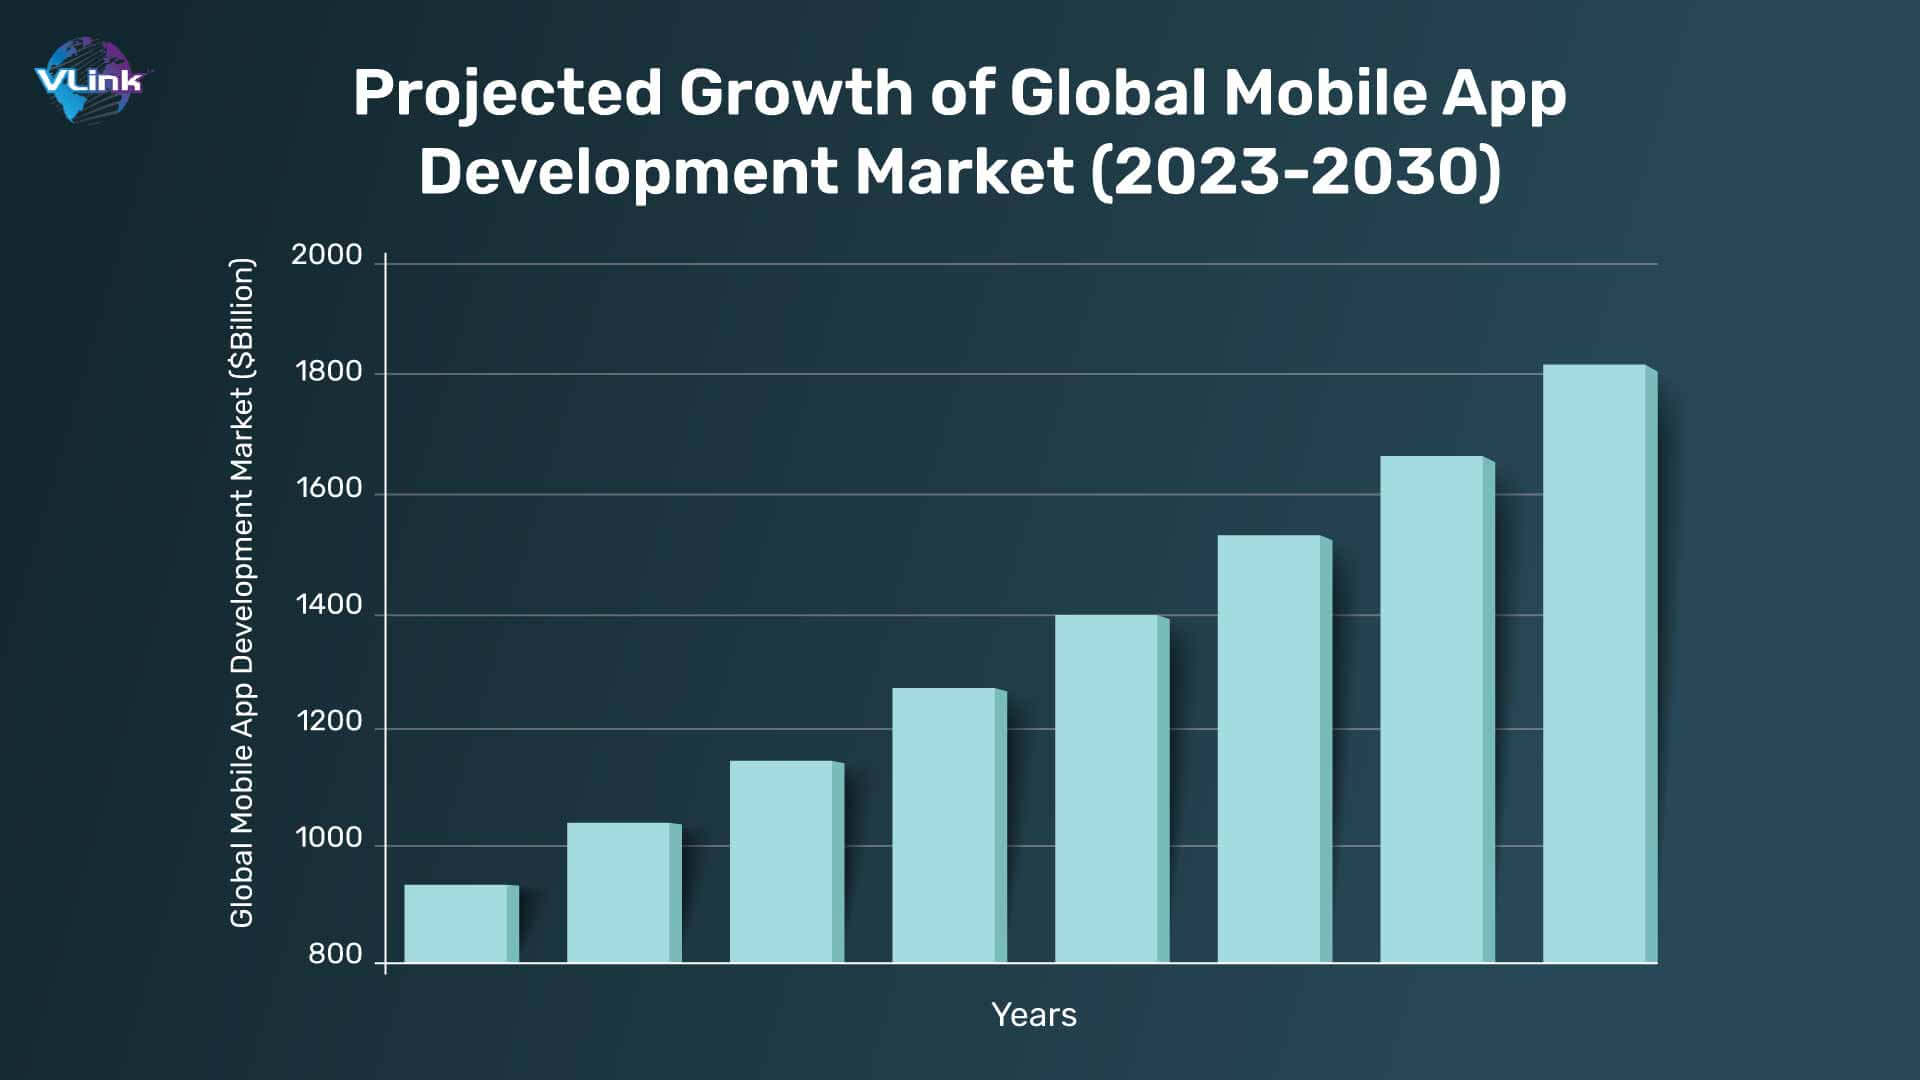 global mobile app development market